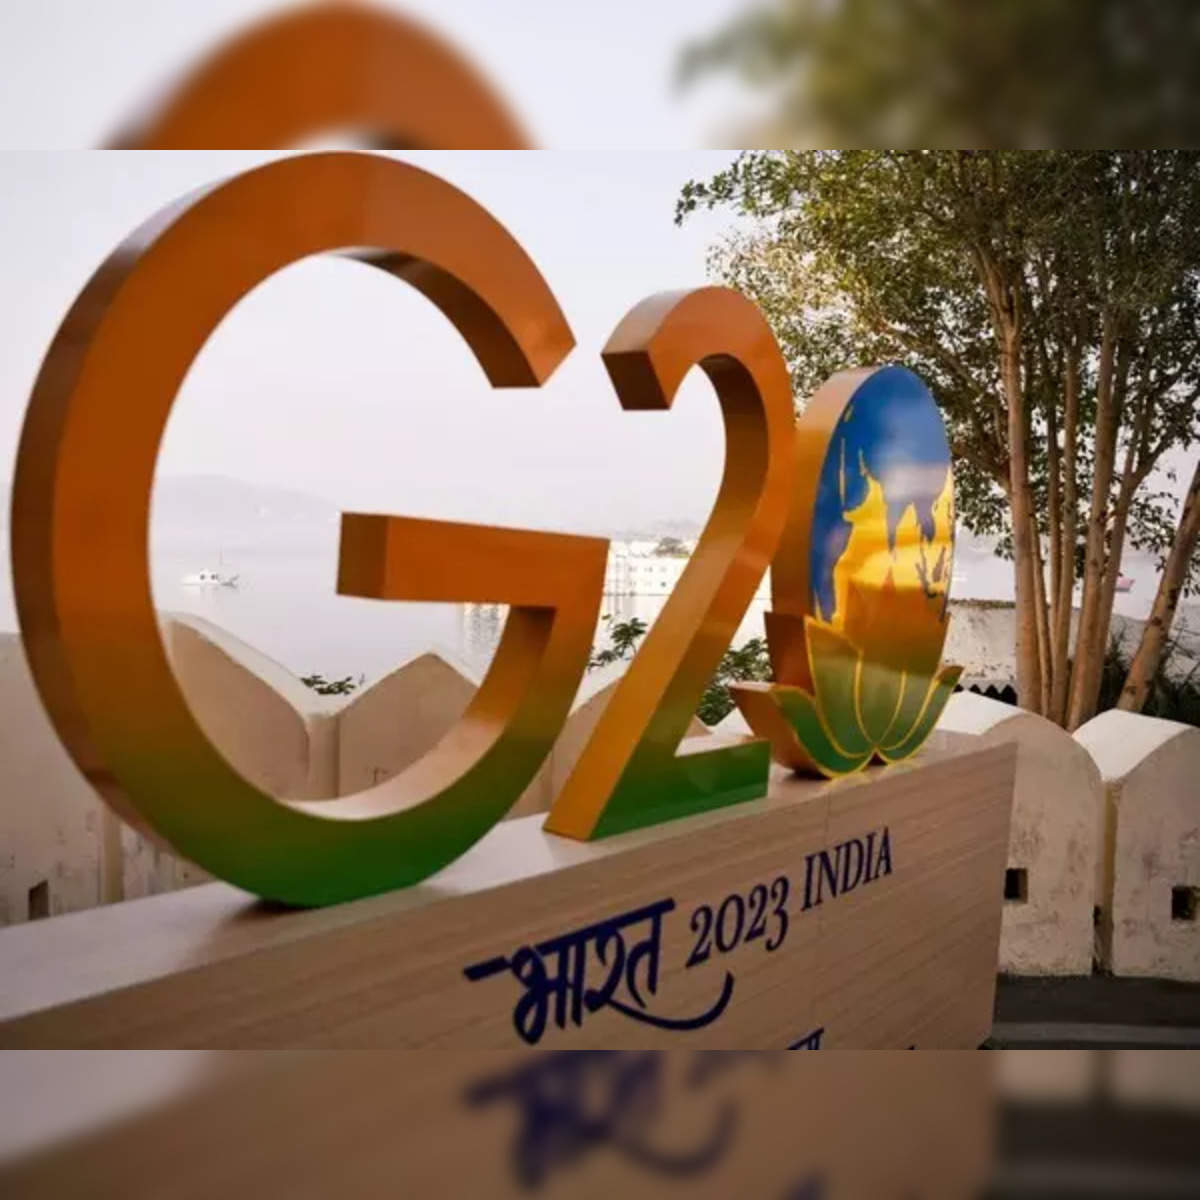 G20 EMPOWER Summit took place in Gandhinagar